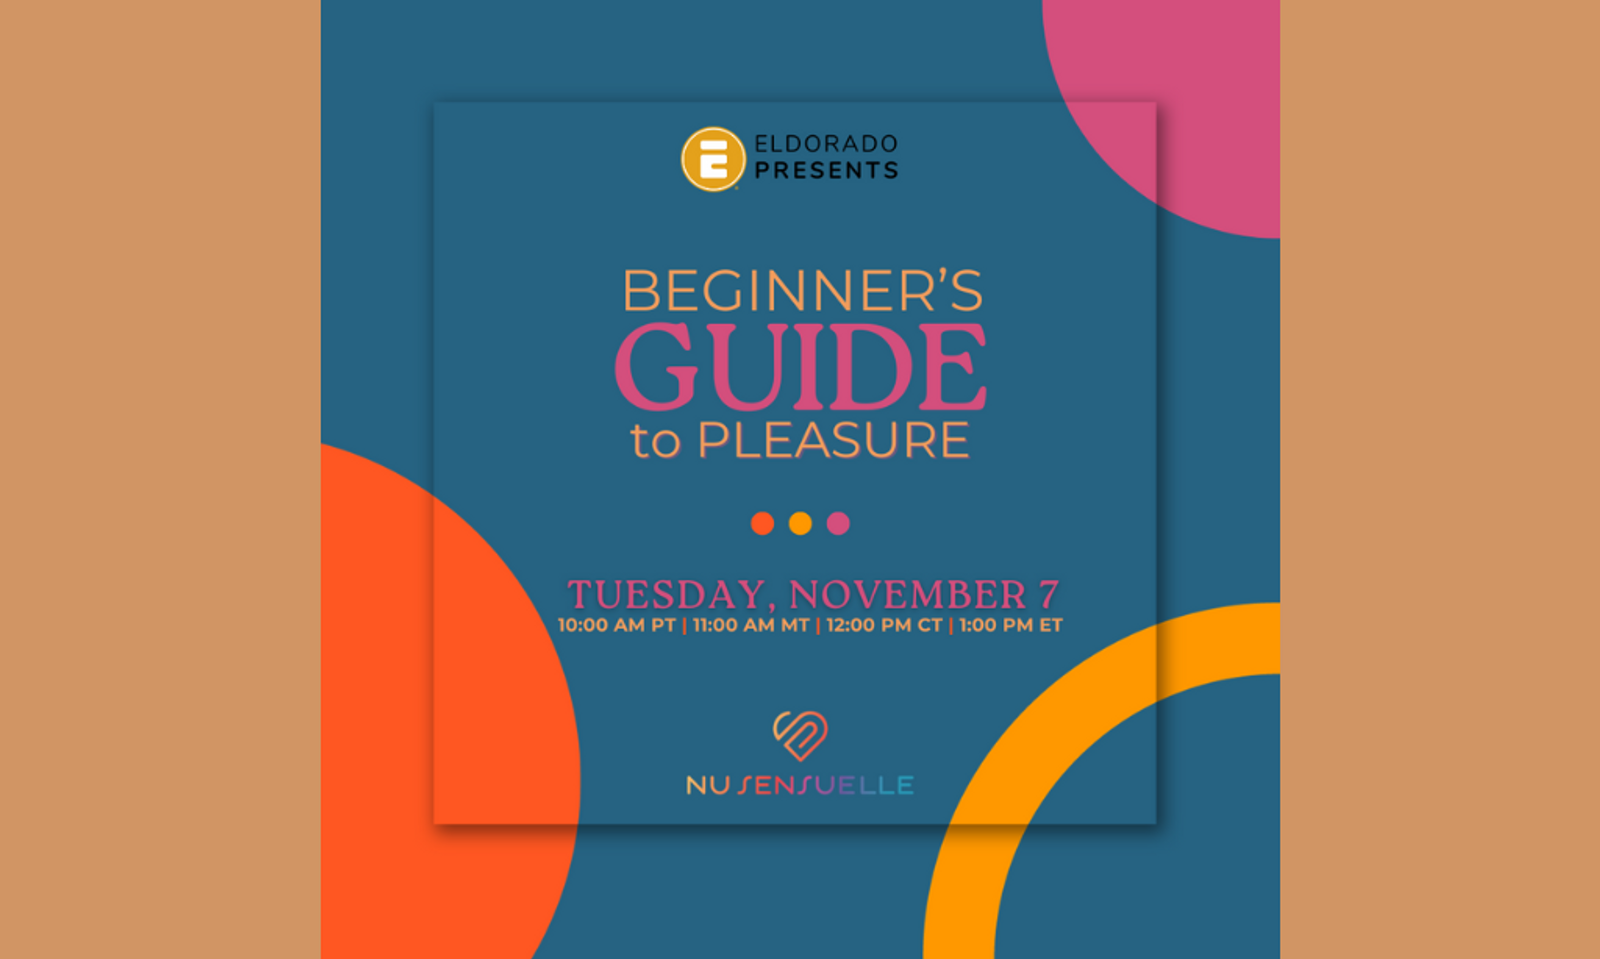 Eldorado Presents: Beginner's Guide to Pleasure With Nu Sensuelle